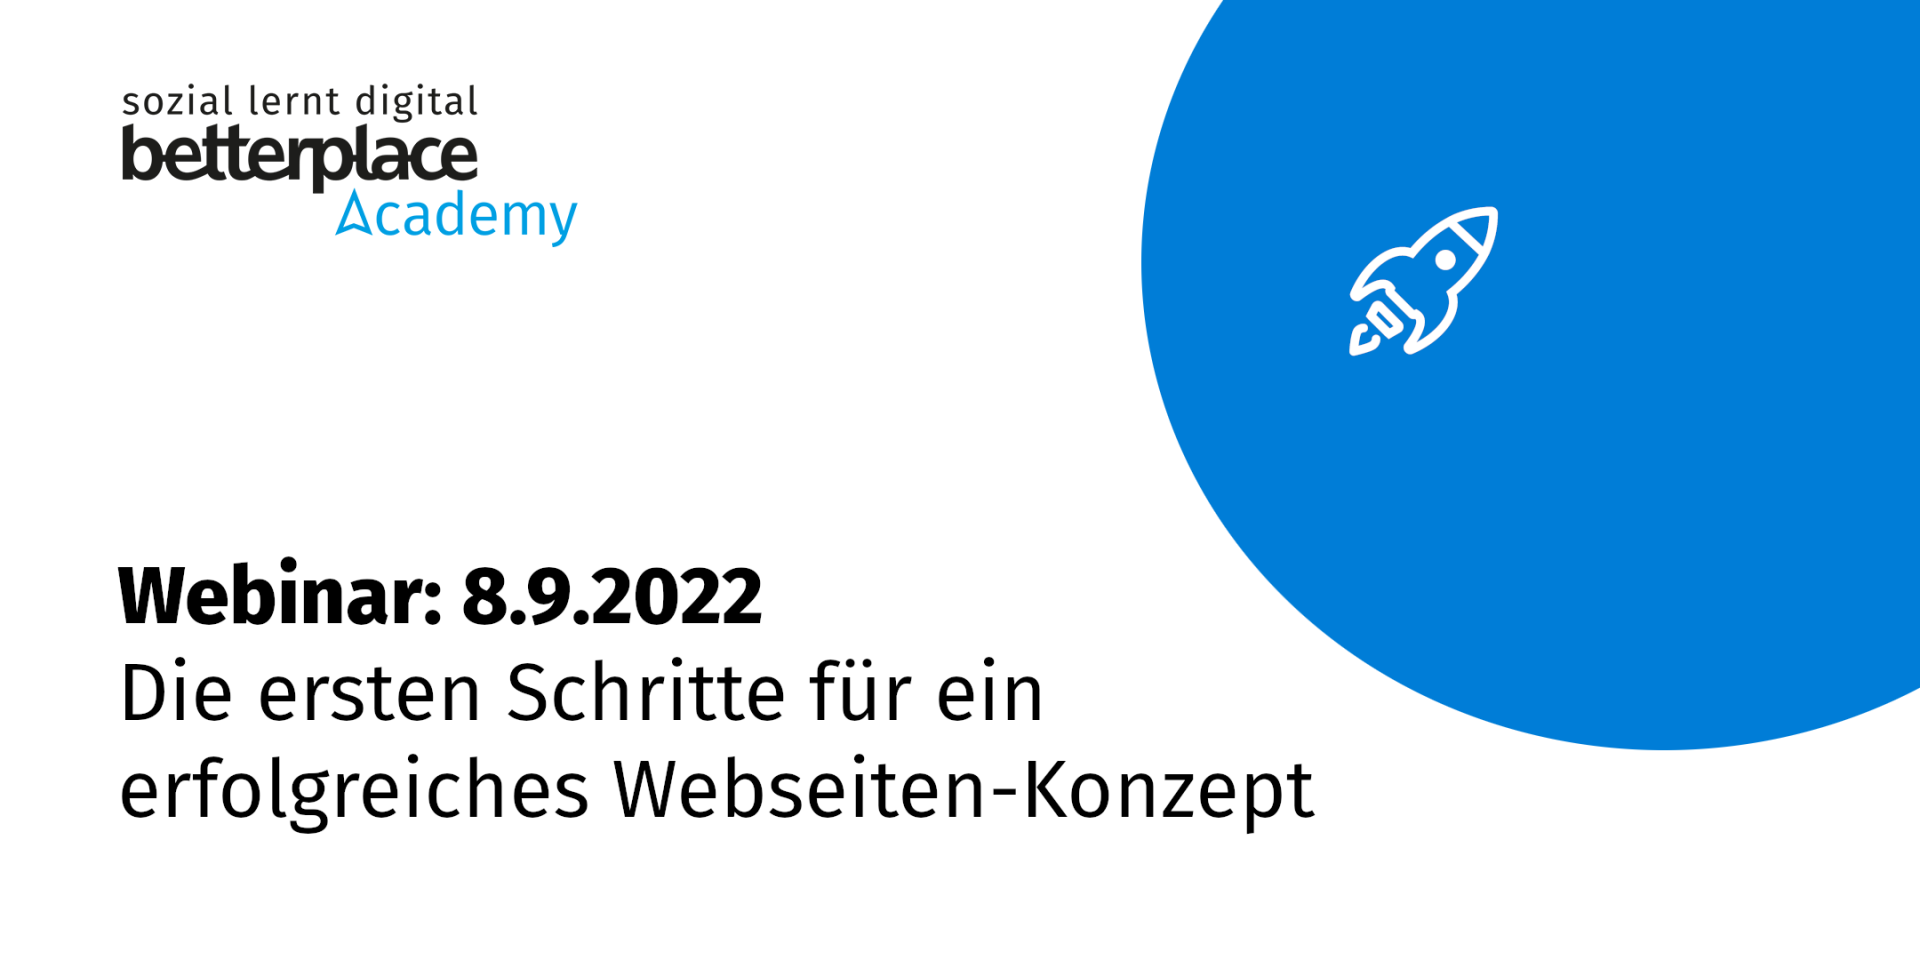 Blauer Planet mit weißer Rakete und Logo der betterplace academy sowie Text: Webinar am 8.9. zu Webseiten-Konzept